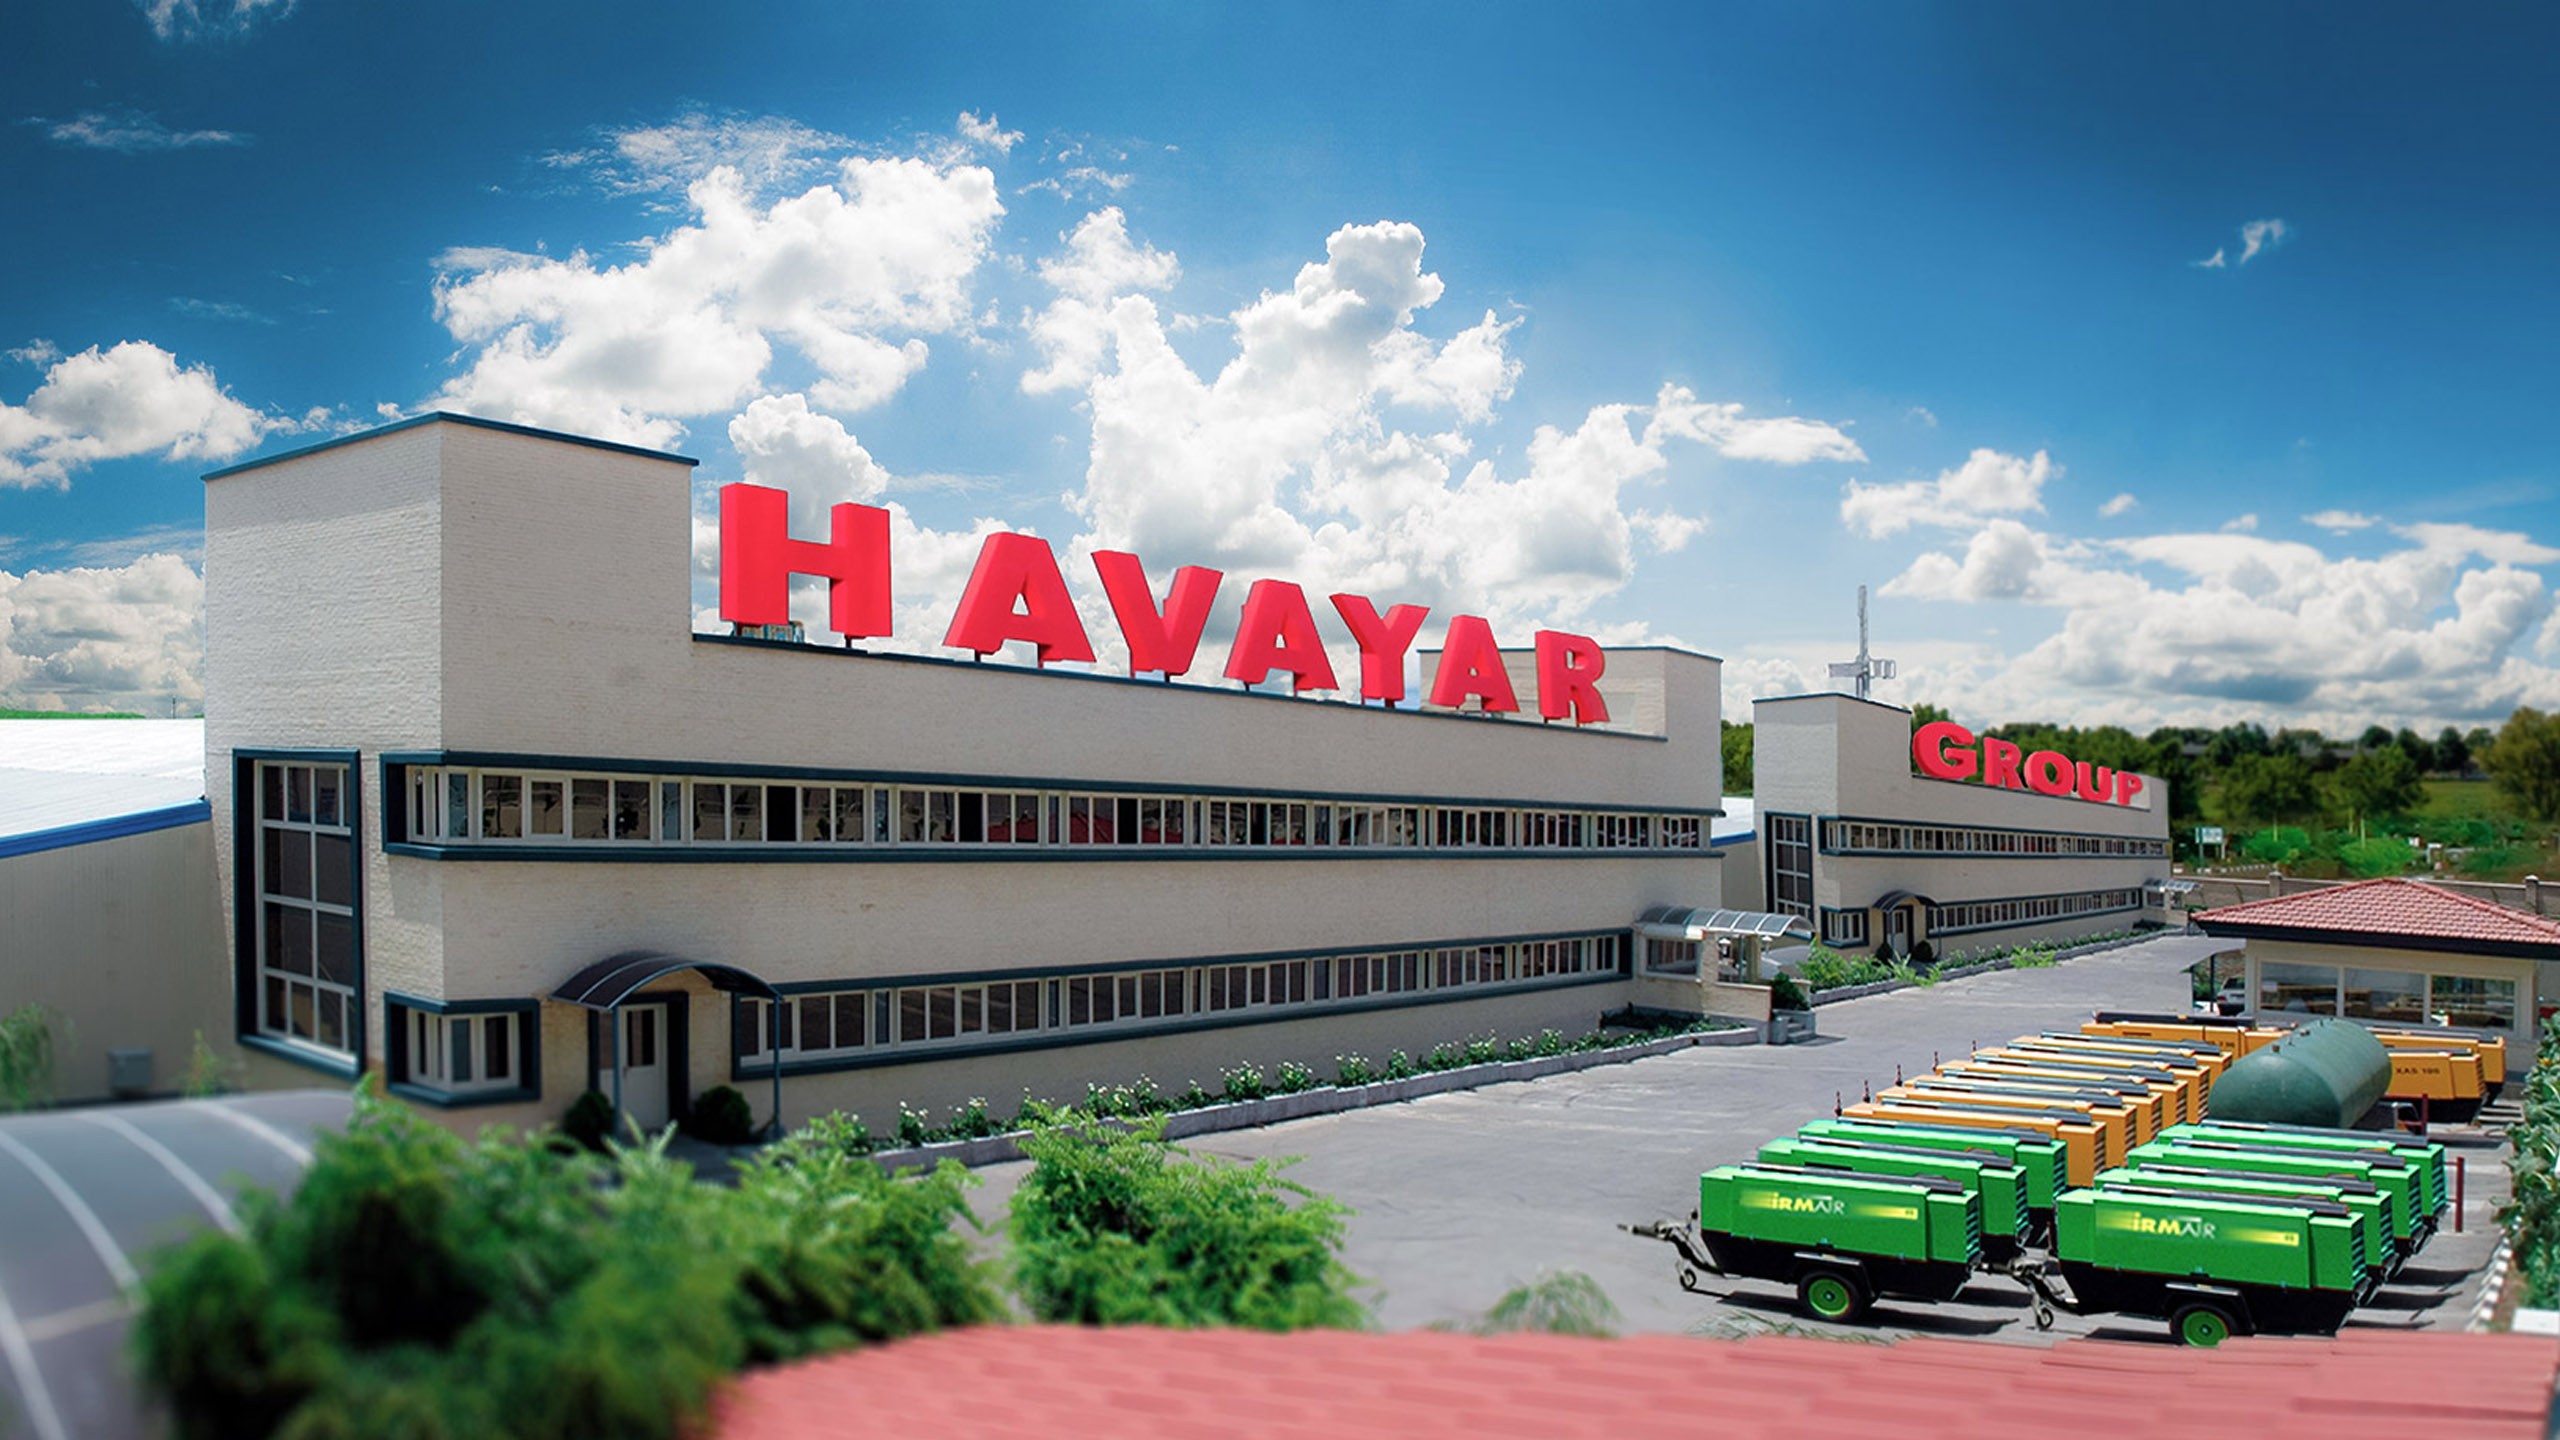 Havayar Industrial Group